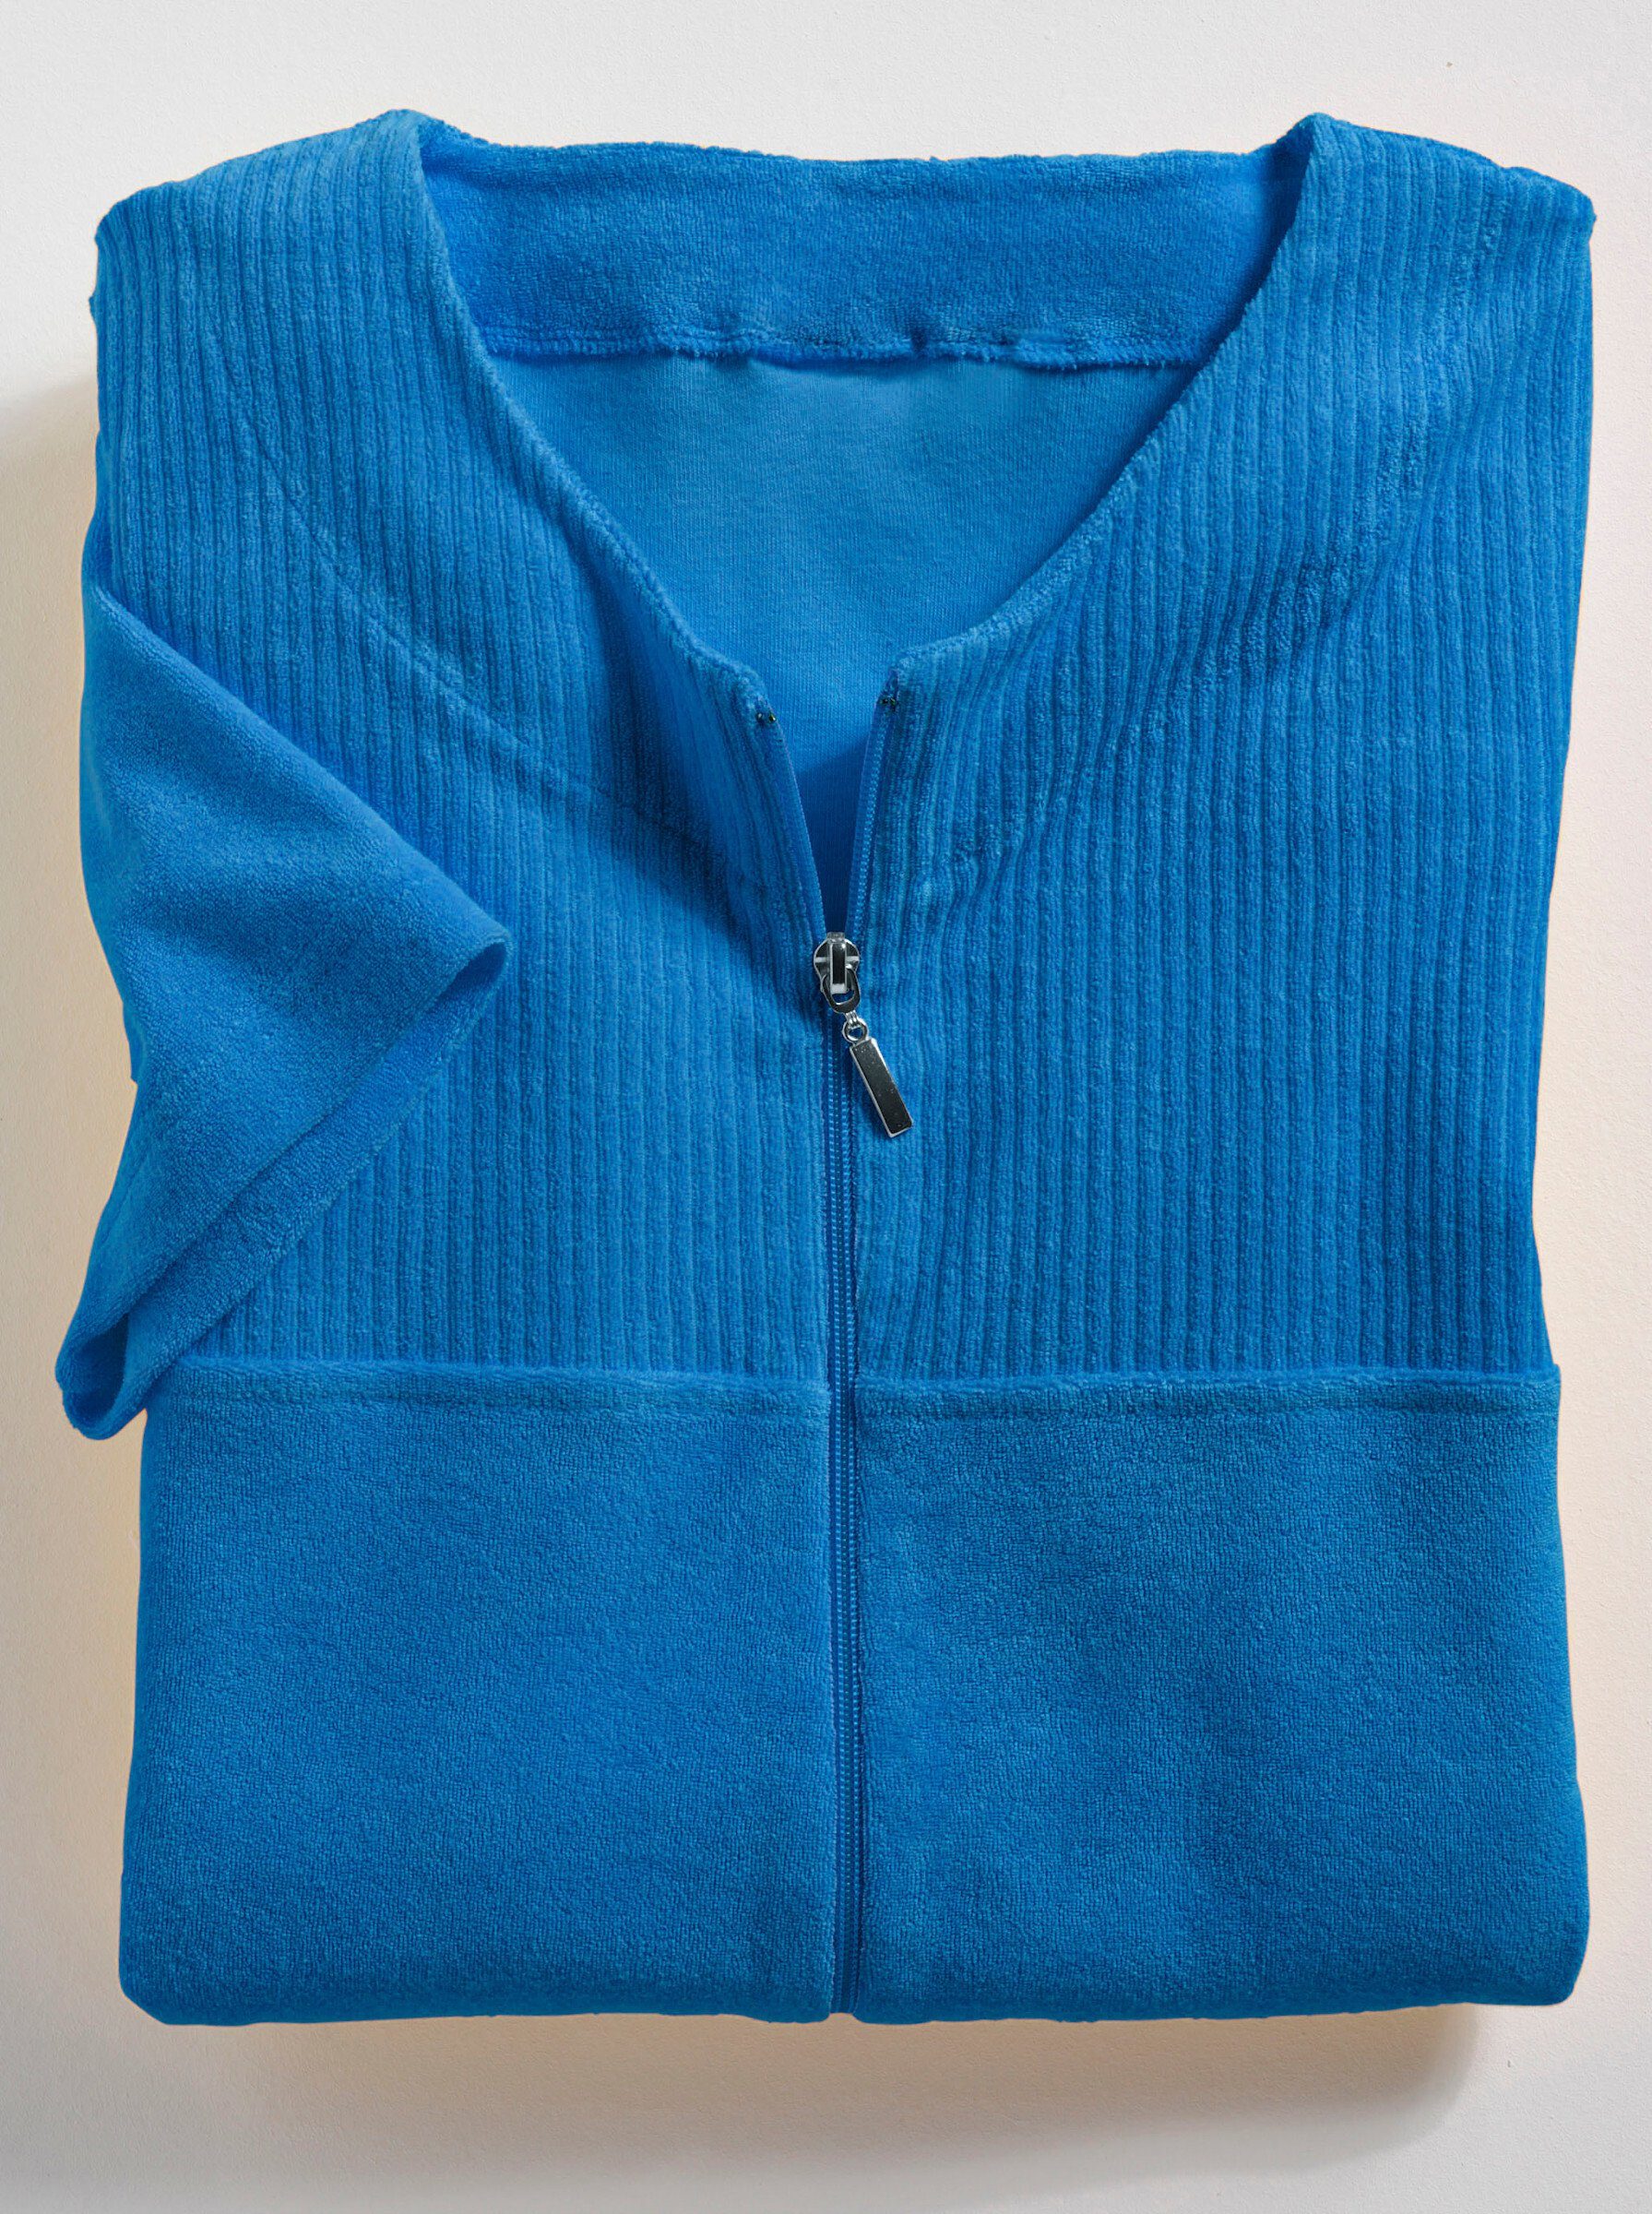 ca. Damenbademantel, Wewo cm, blau 100 Reißverschluss Baumwolle, fashion Länge